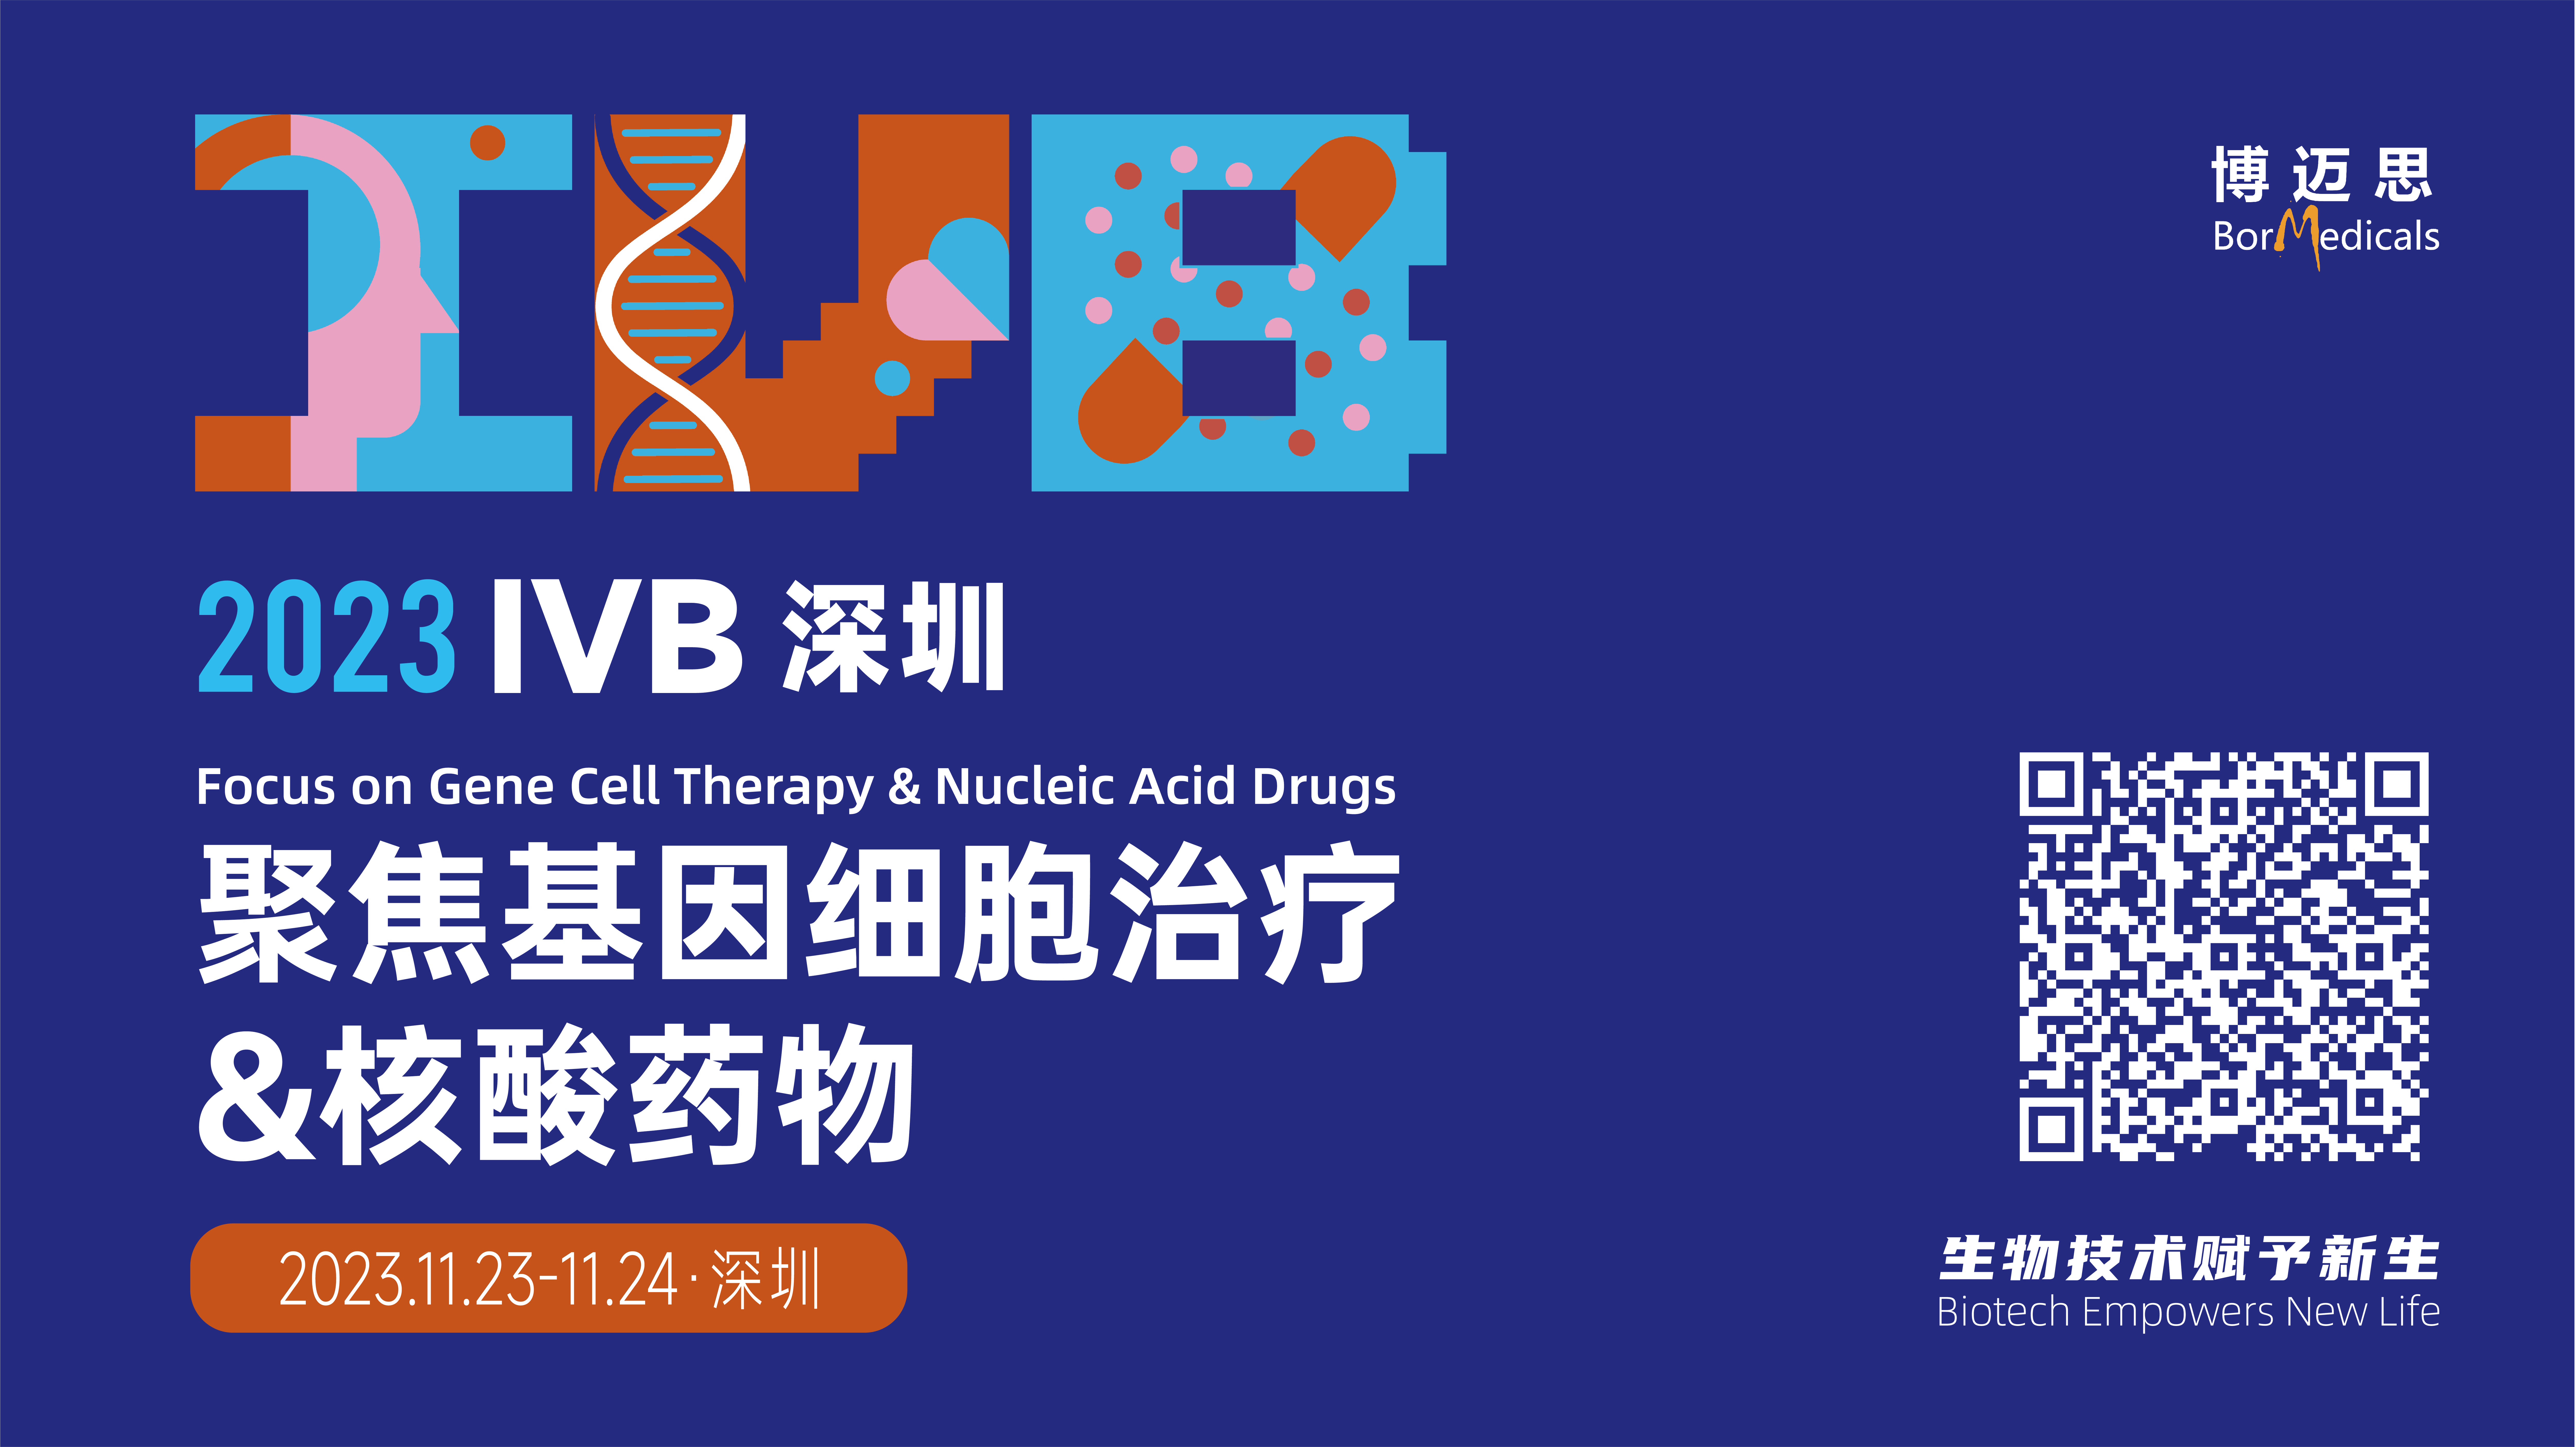 <b>2023 IVB深圳--聚焦基因细胞治疗&核酸药物峰会</b>